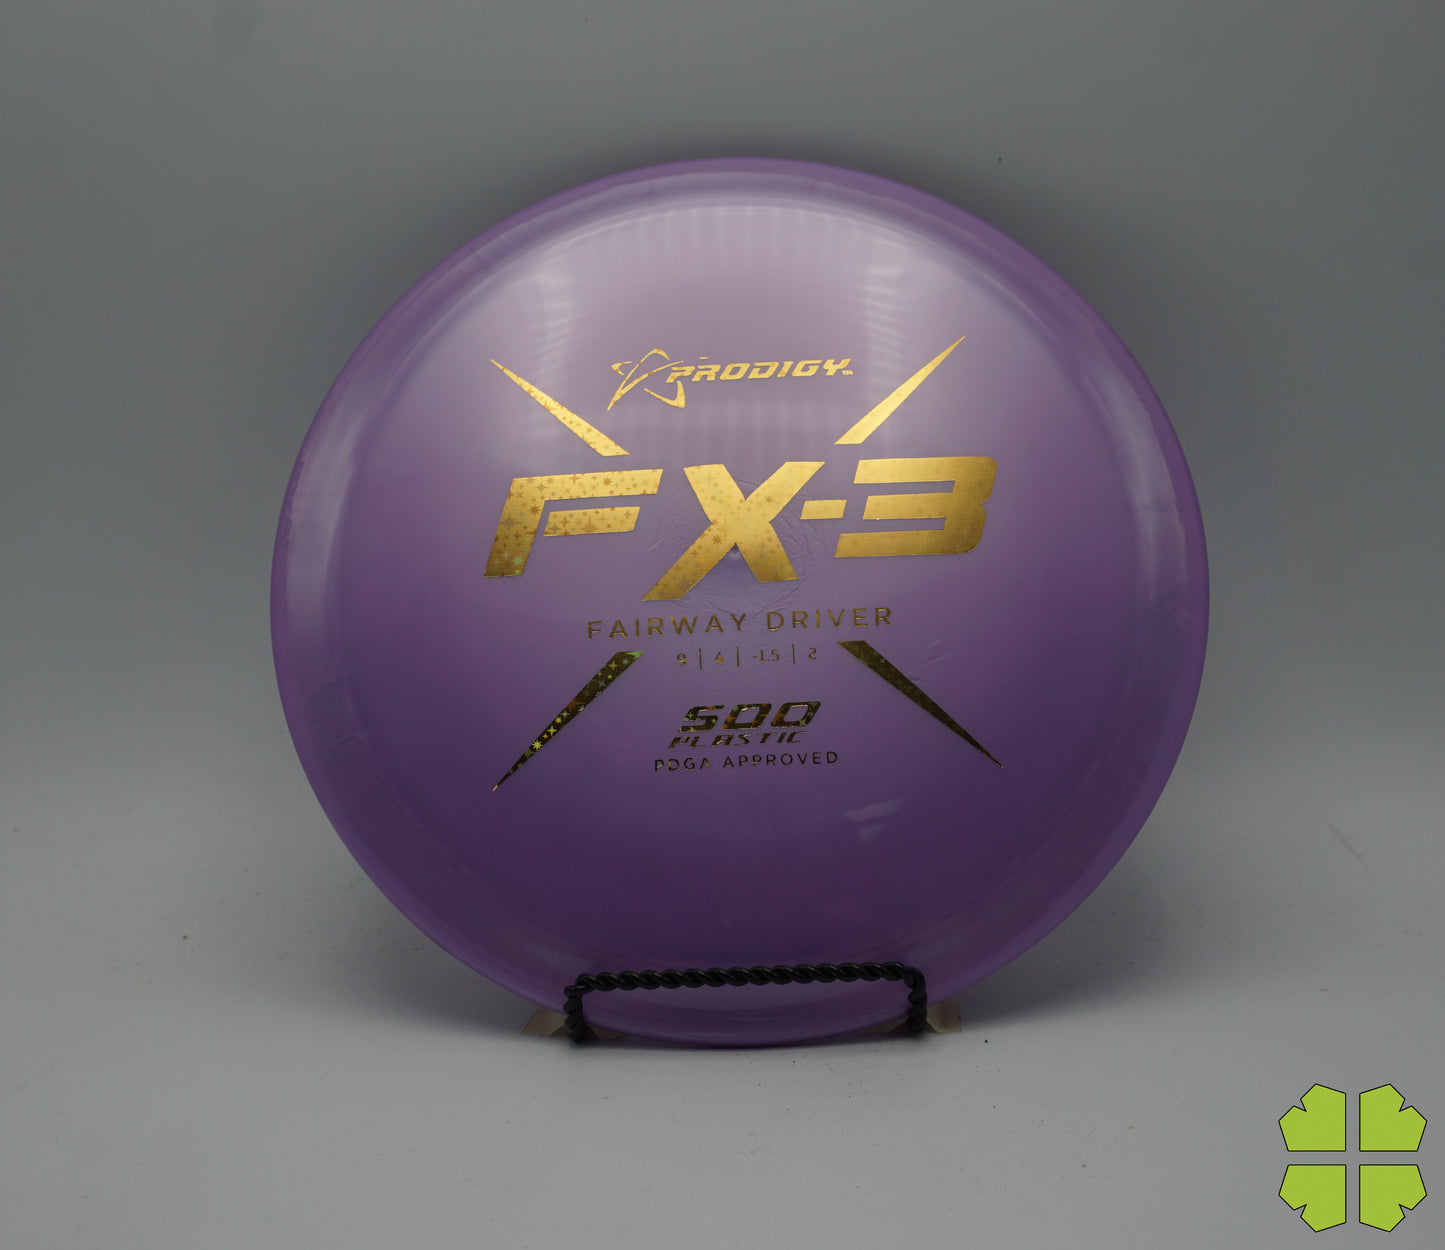 500 Plastic FX-3